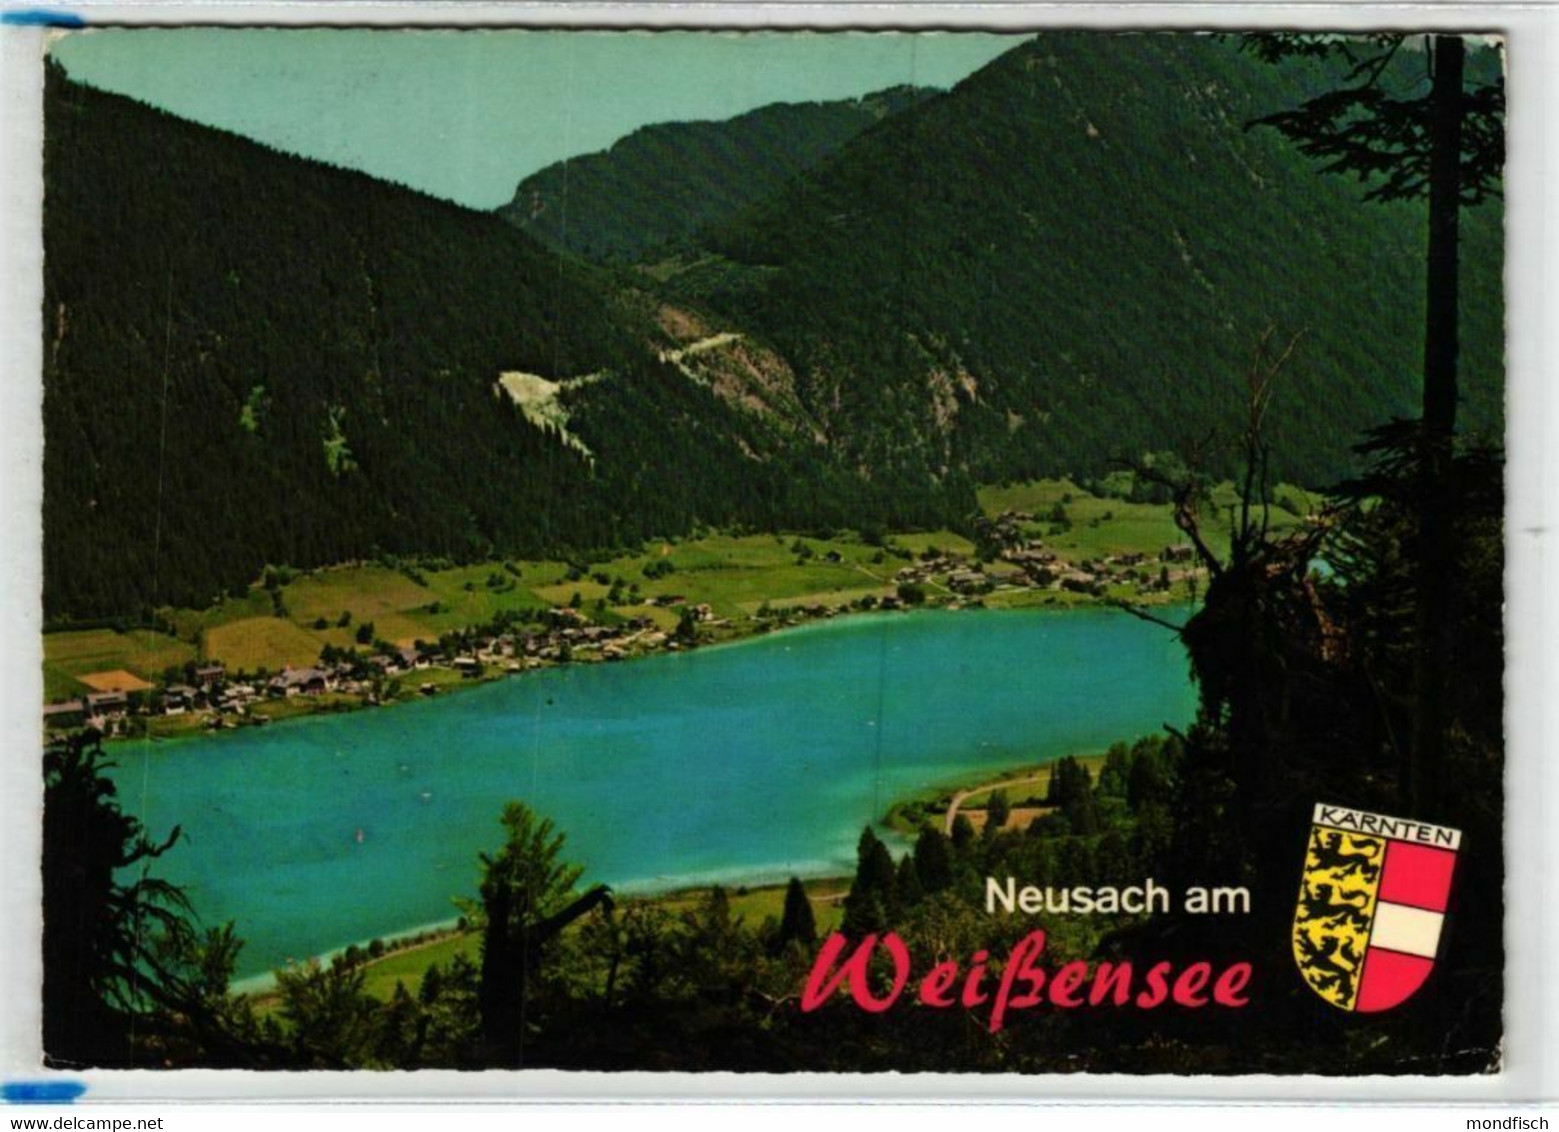 Neusach Am Weißensee 1976 - Weissensee